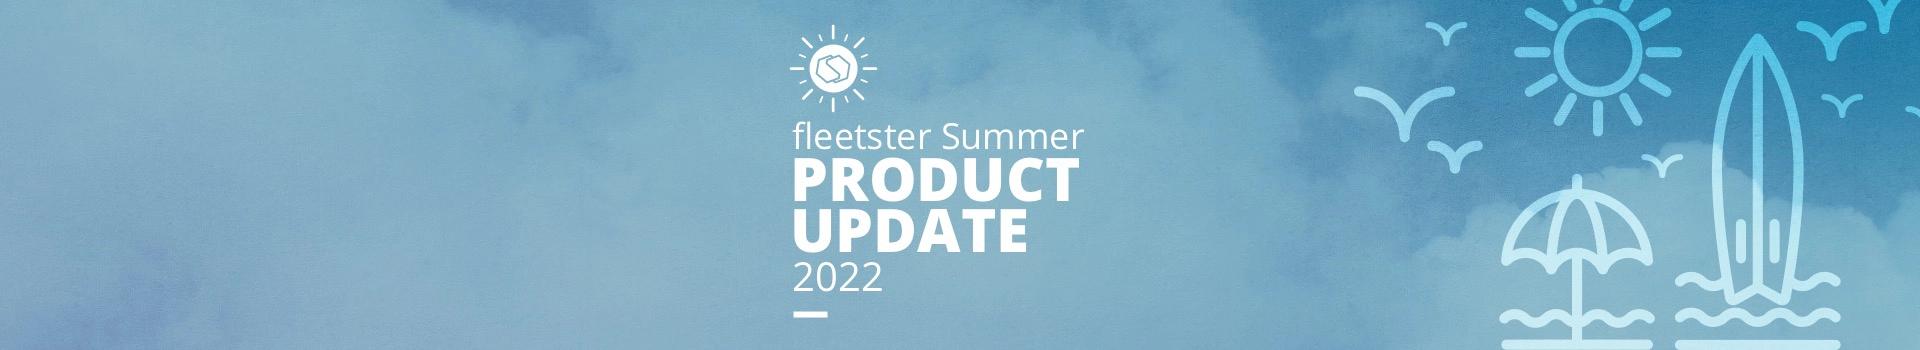 fleetster's Summer Update 2022 